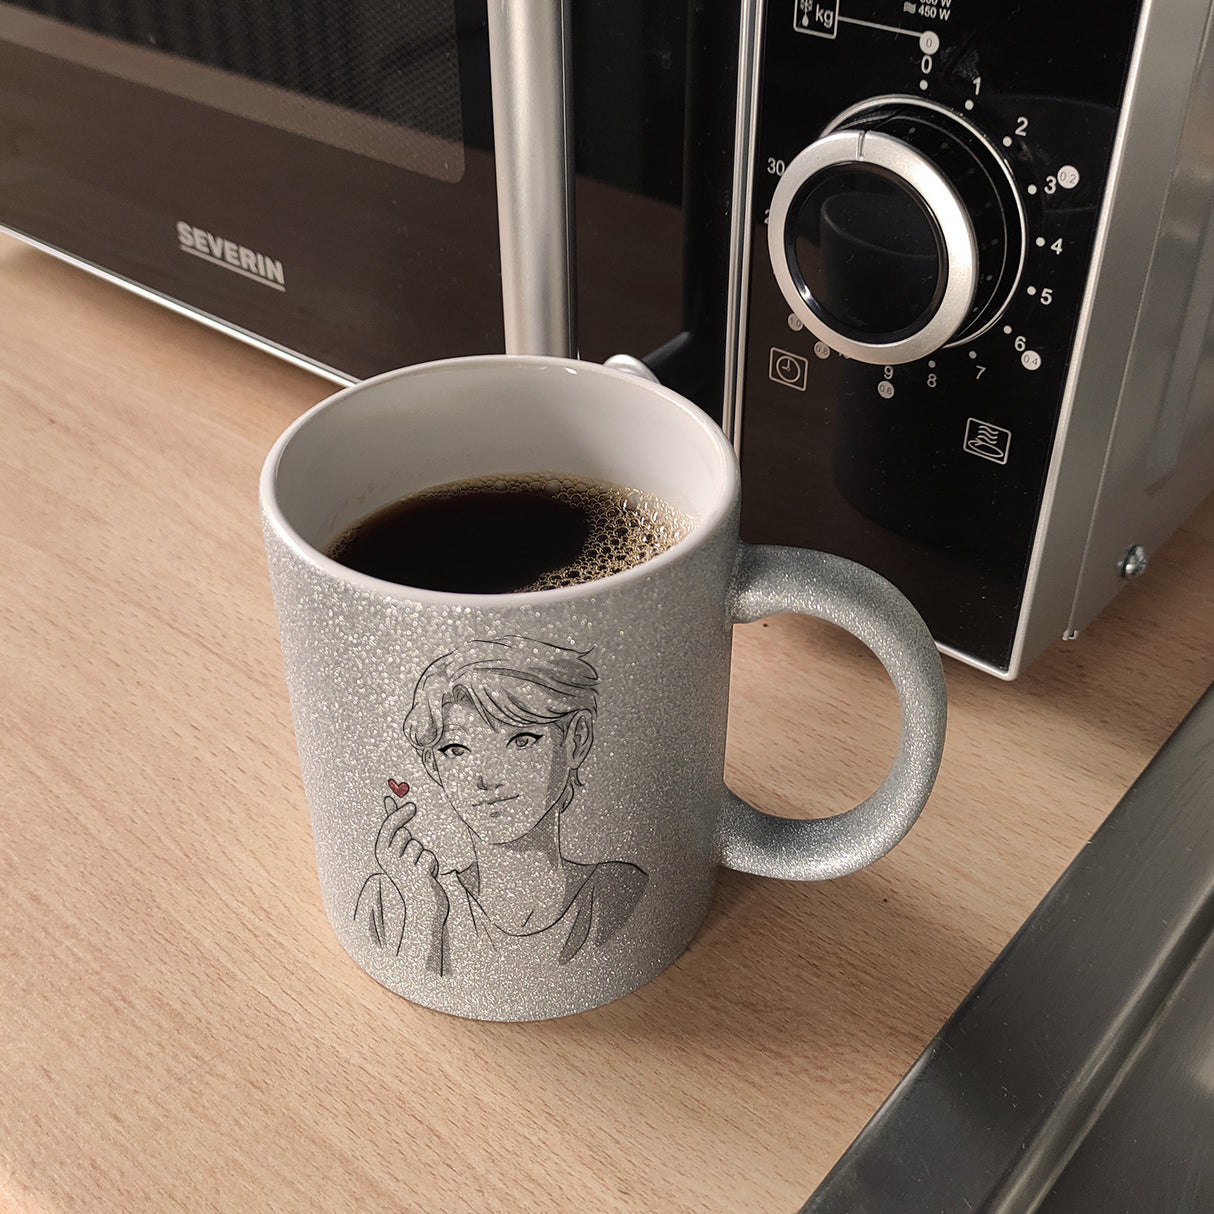 K-Pop Herz Zeichen Kaffeebecher mit Manga Charakter in Farbe